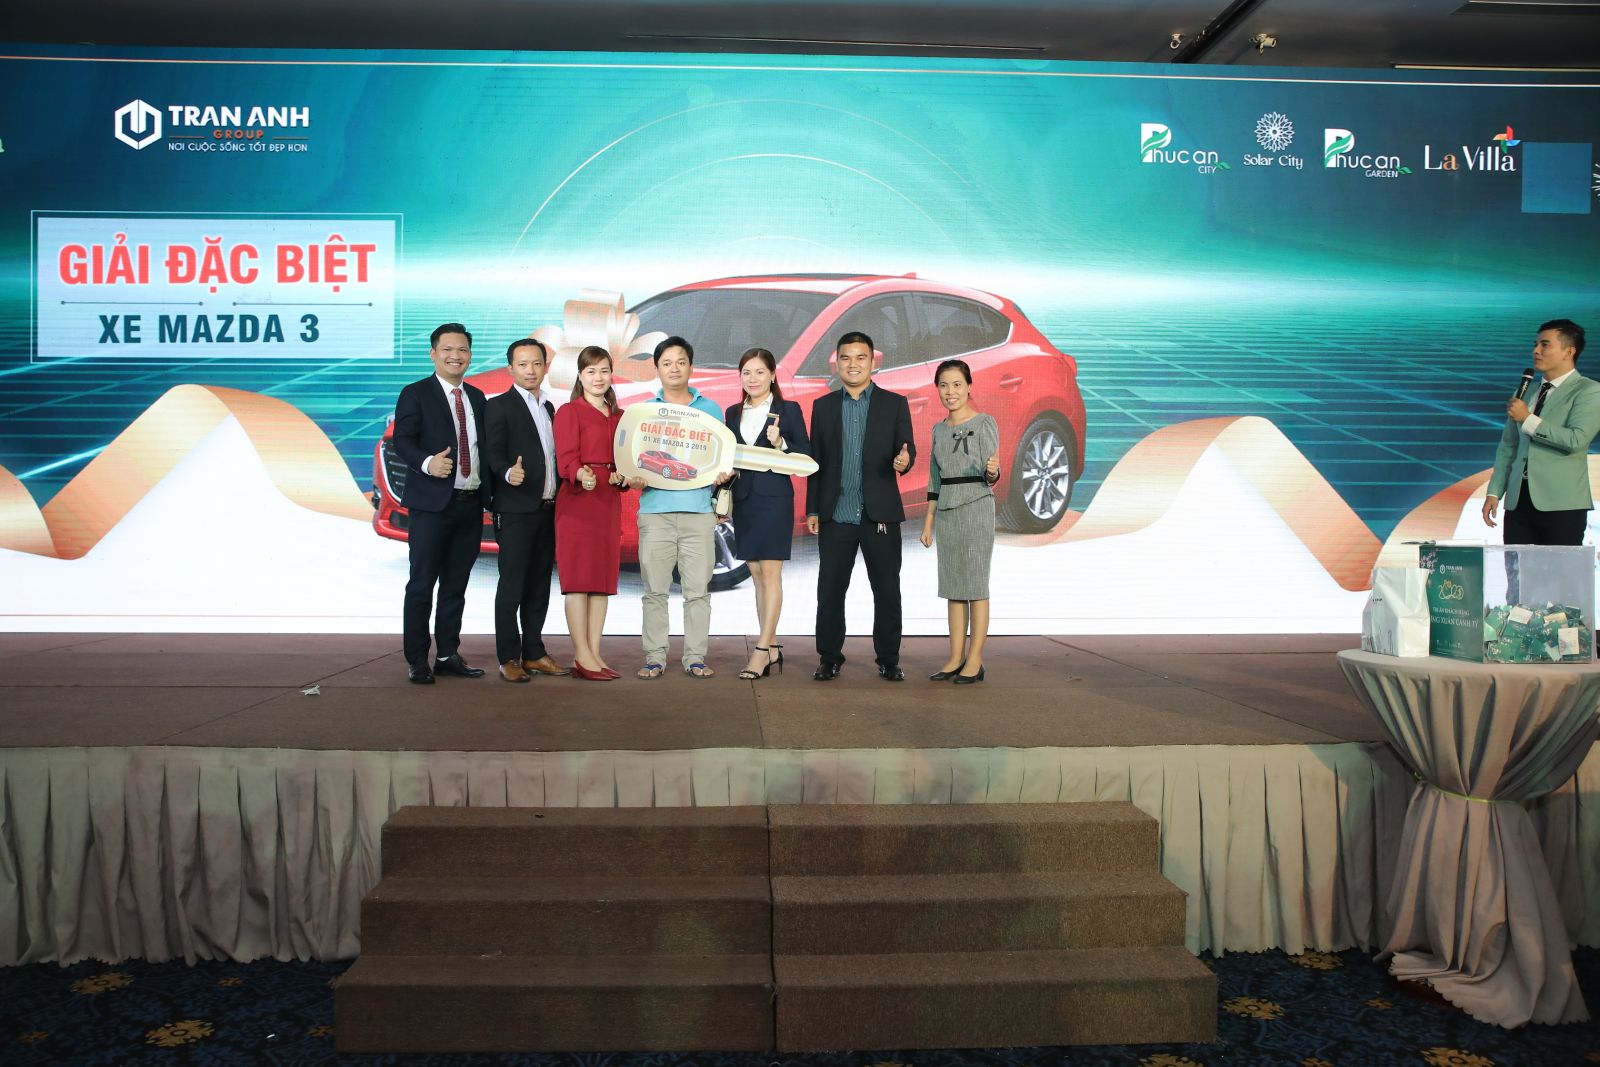 Khách hàng may mắn nhận được giải thưởng đặc biệt của chương trình, xe Mazda 3 sang trọng